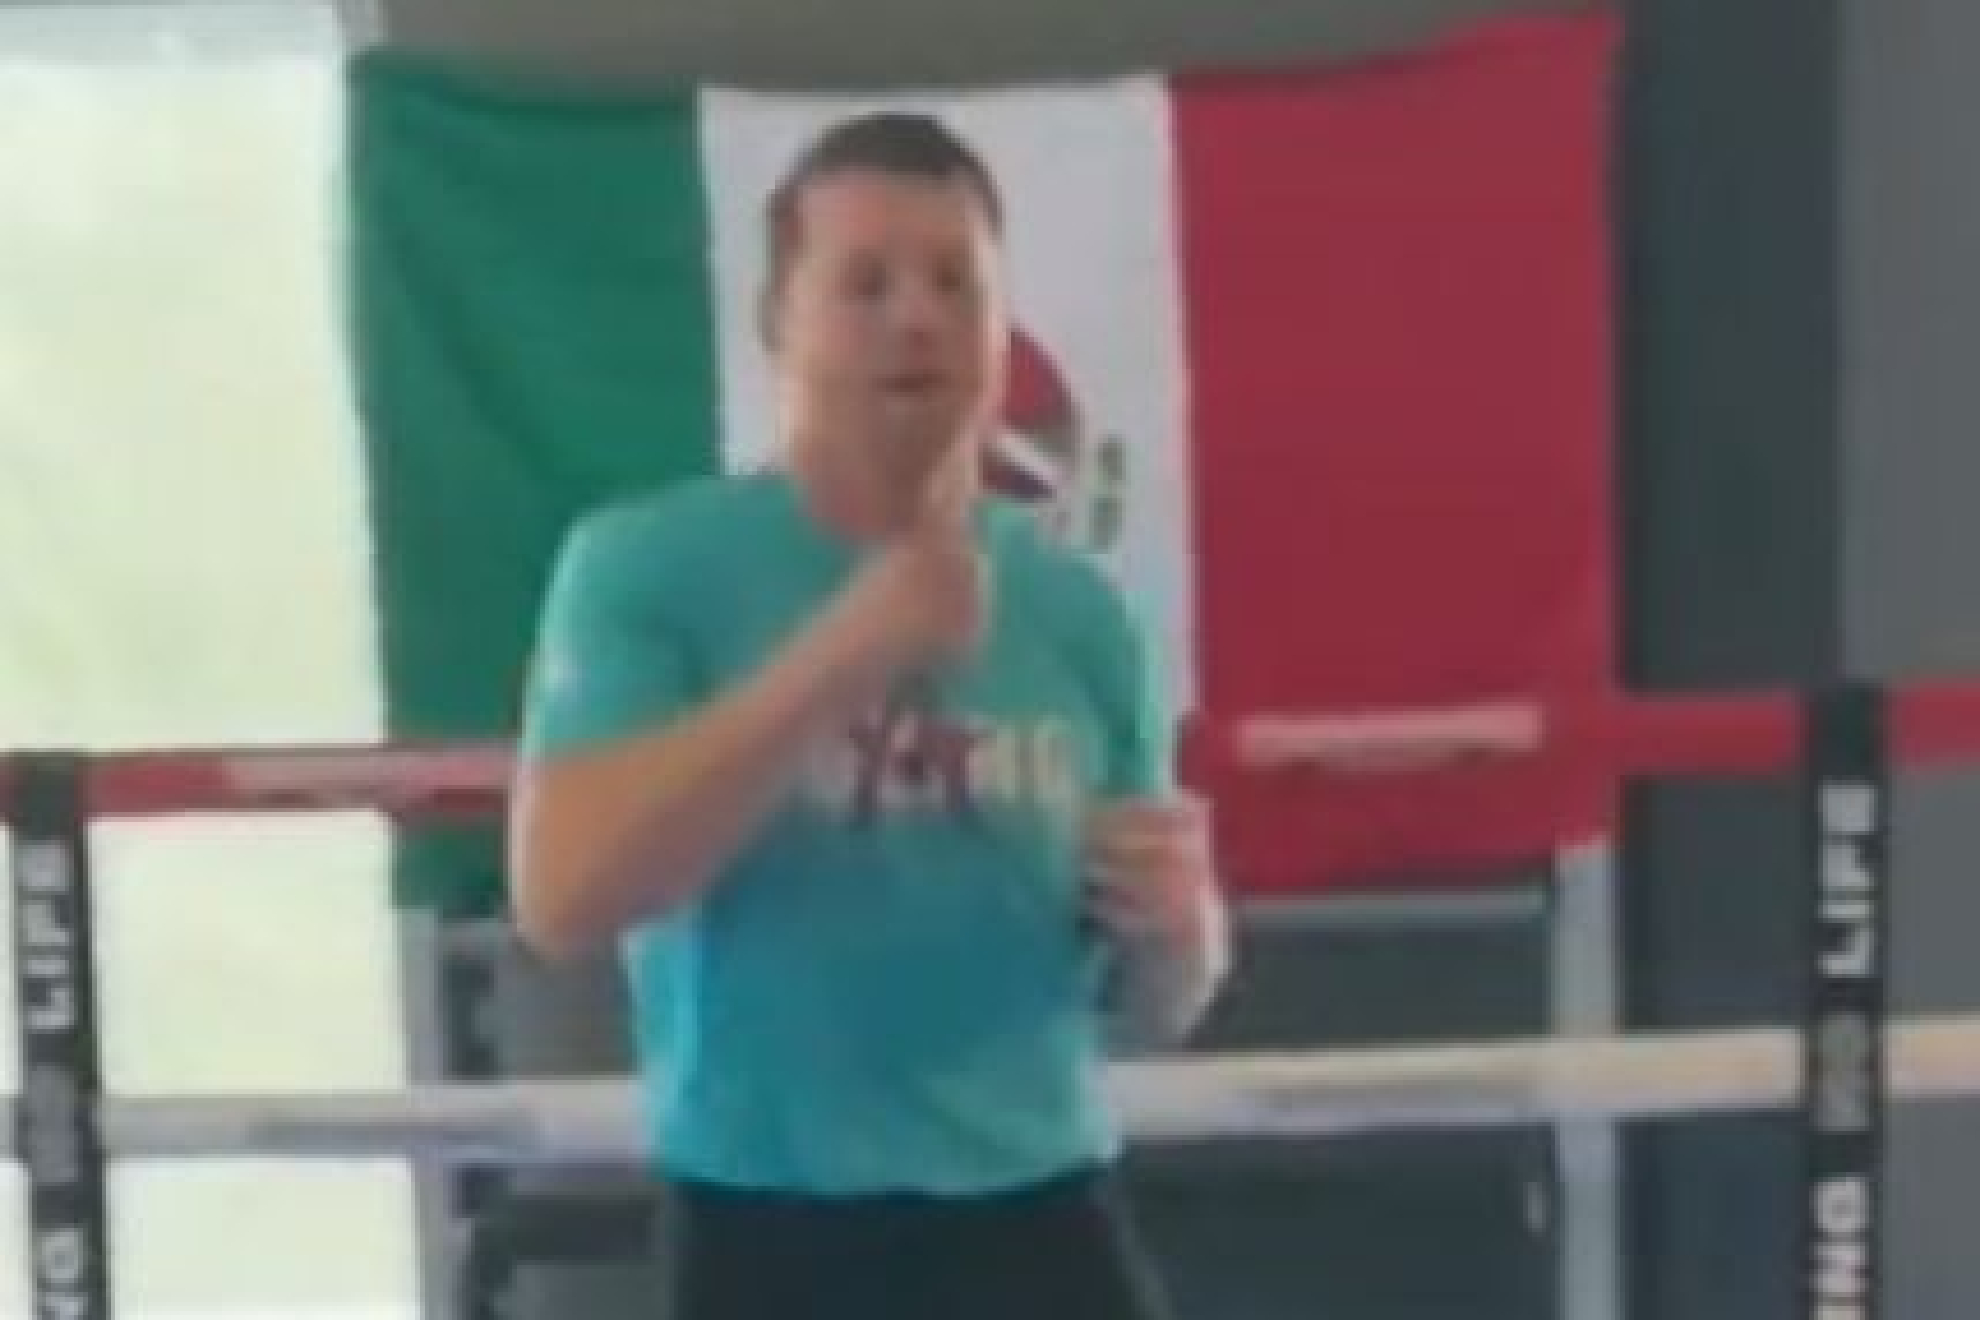 Alegre se nota el deportista mexicano, motivado y casi listo para el combate.